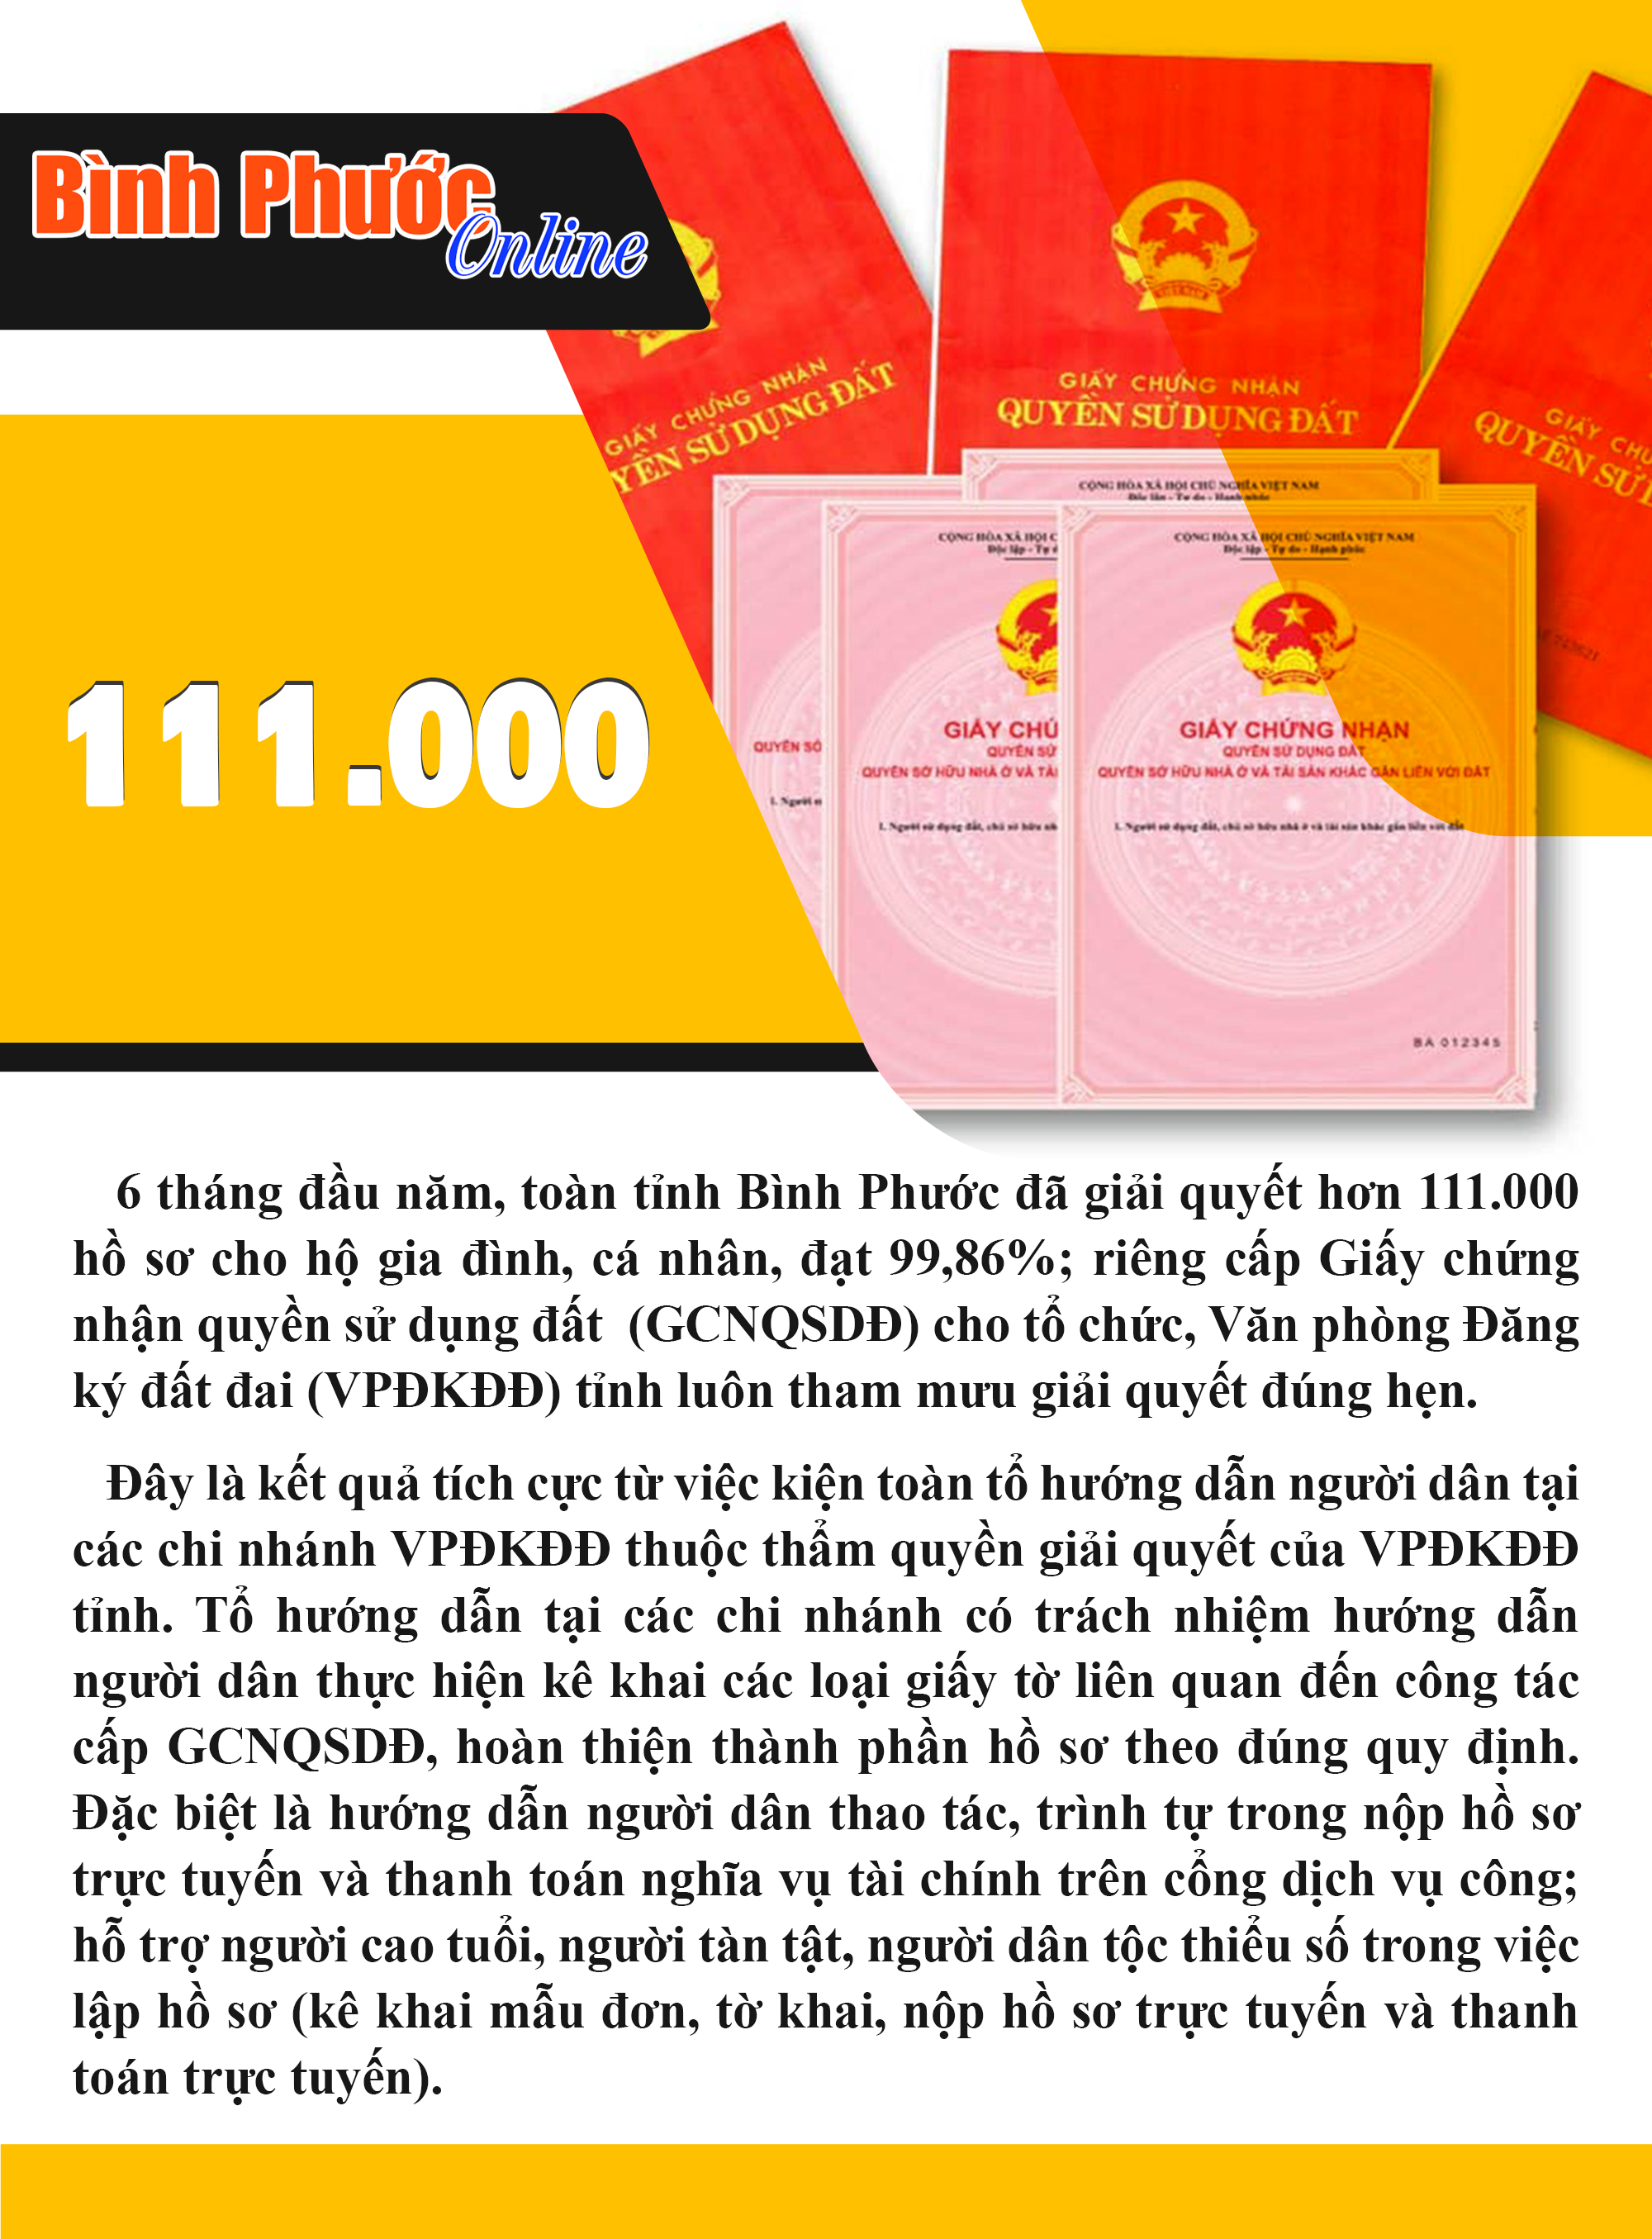 6 tháng đầu năm, Bình Phước giải quyết hơn 111.000 hồ sơ cho hộ gia đình, cá nhân